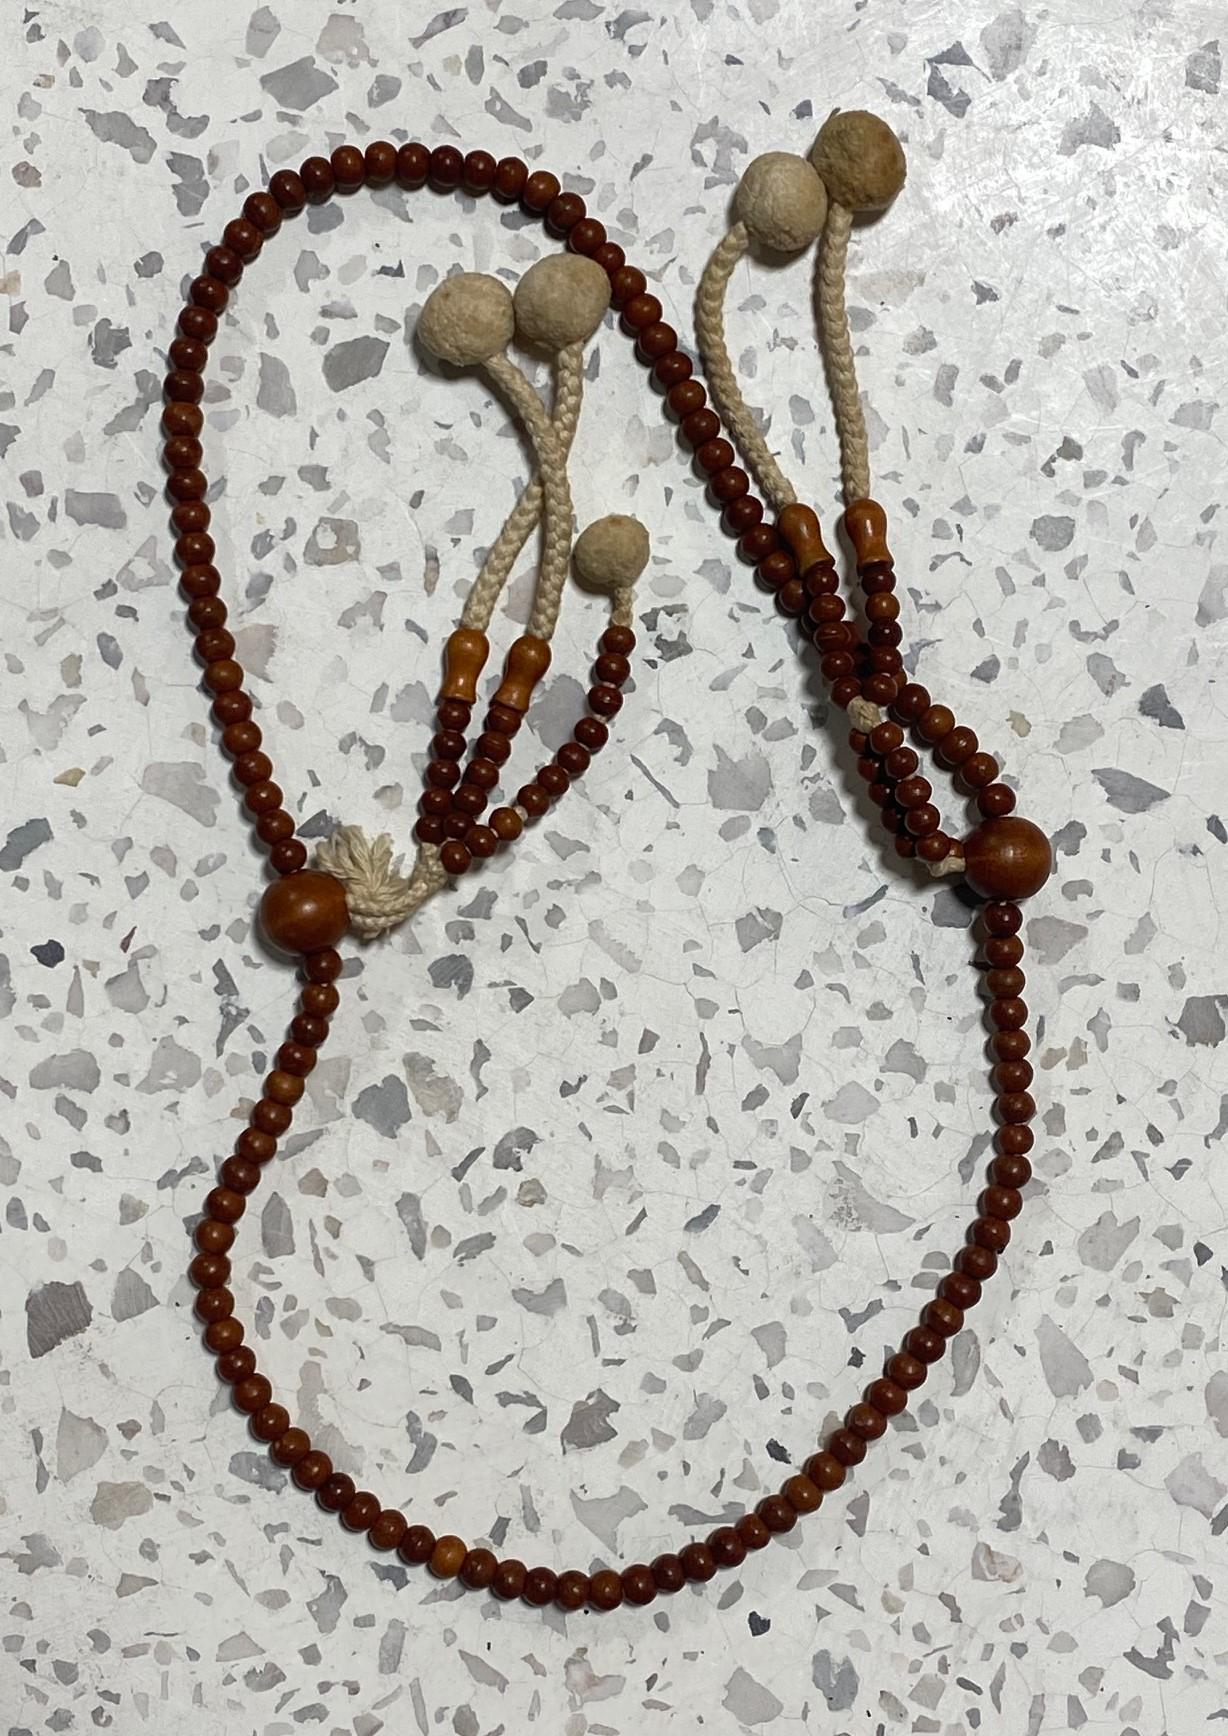 Eine schöne Kette von japanischen handgefertigten buddhistischen Juzu Mala-Perlen aus natürlichem Holz. Diese rosenkranzartigen Gebetsketten wurden von buddhistischen Mönchen für Gebete und Rituale im Tempel verwendet und von Samurai als